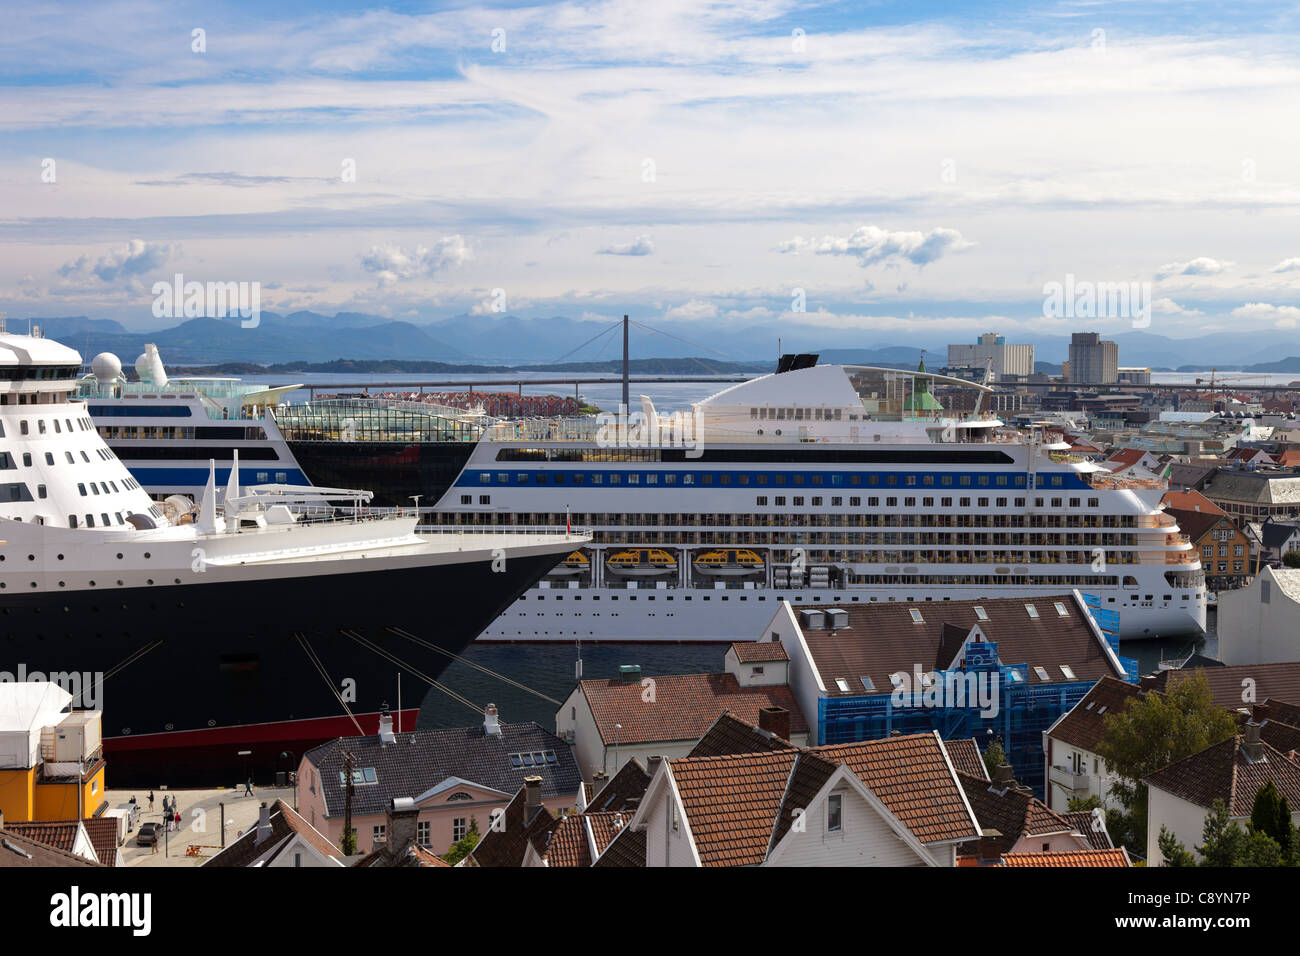 La ville norvégienne de Stavanger, fréquentés par les touristes de partout dans le monde. Banque D'Images